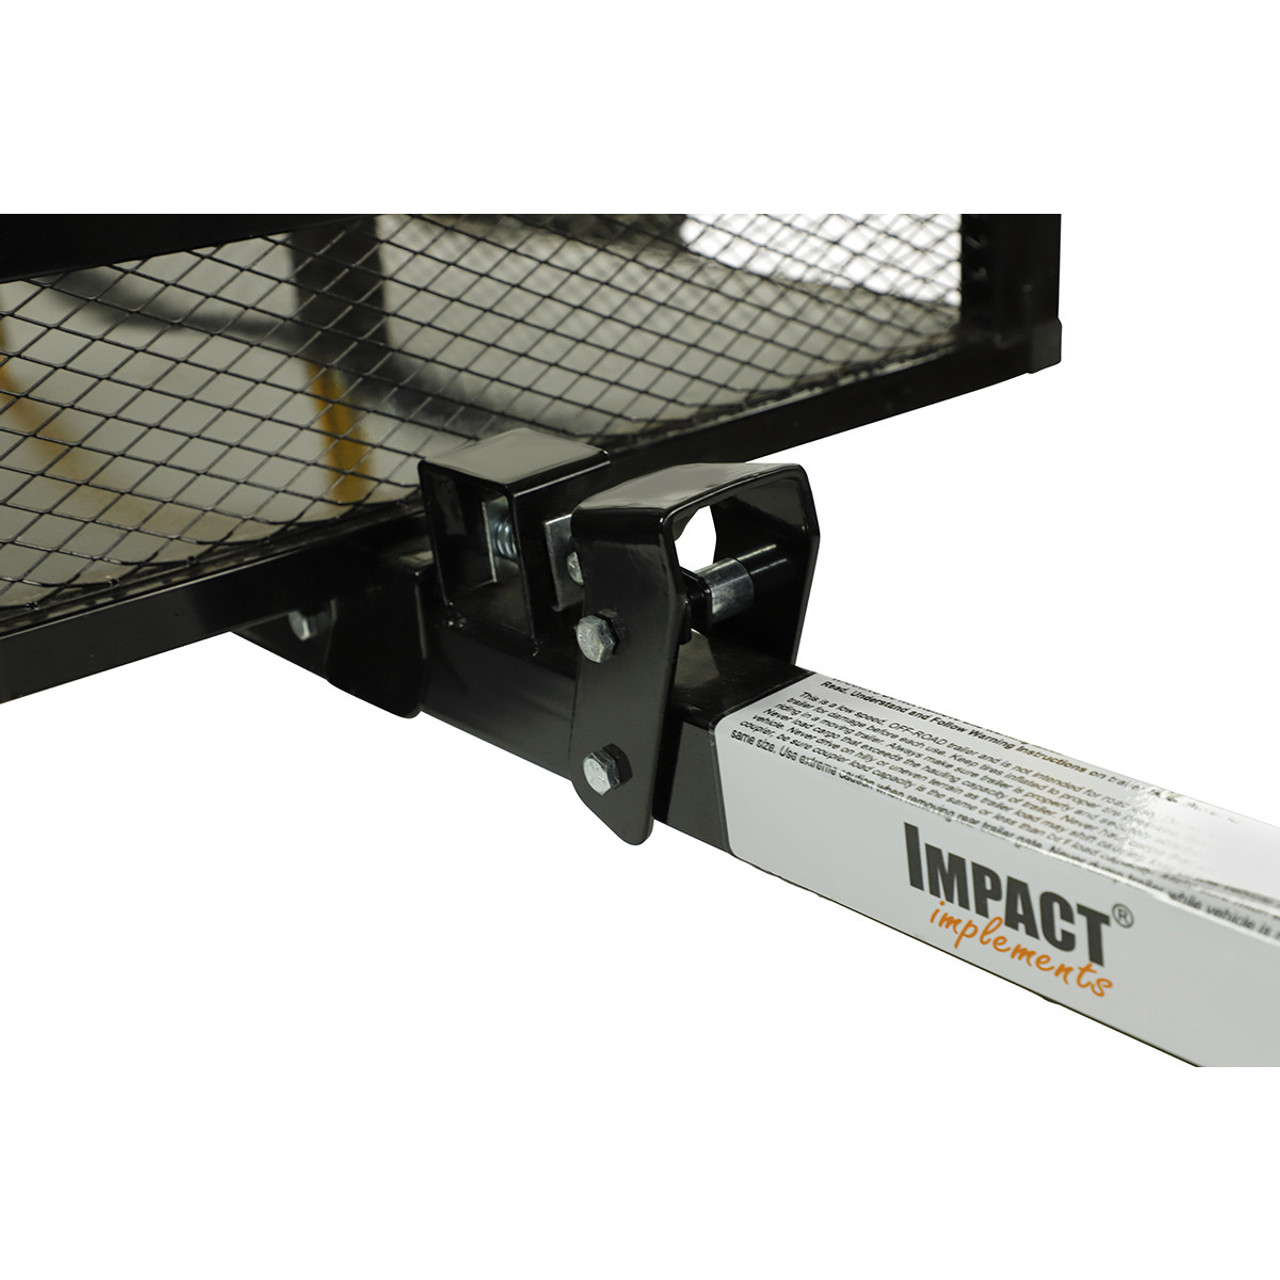 UTV Side X Side Stake Rack ATV/UTV Utility Trailer 1000-lb Capacity, 12 cu ft